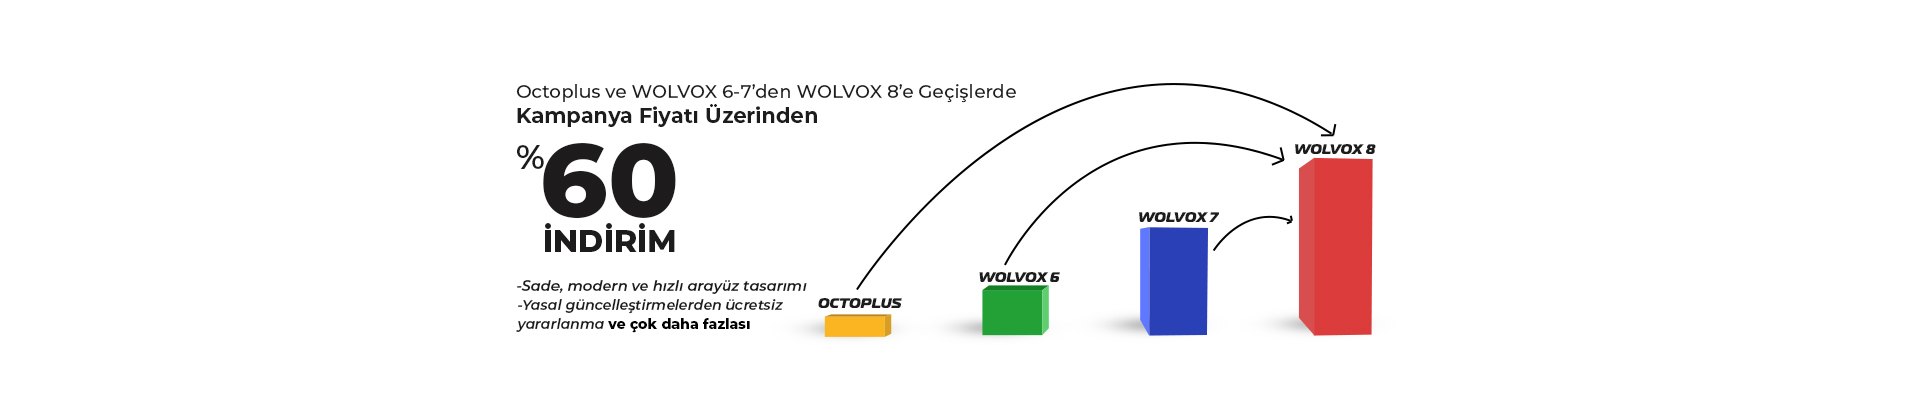 Wolvox 6-7 den Wolvox 8 e Geçiş